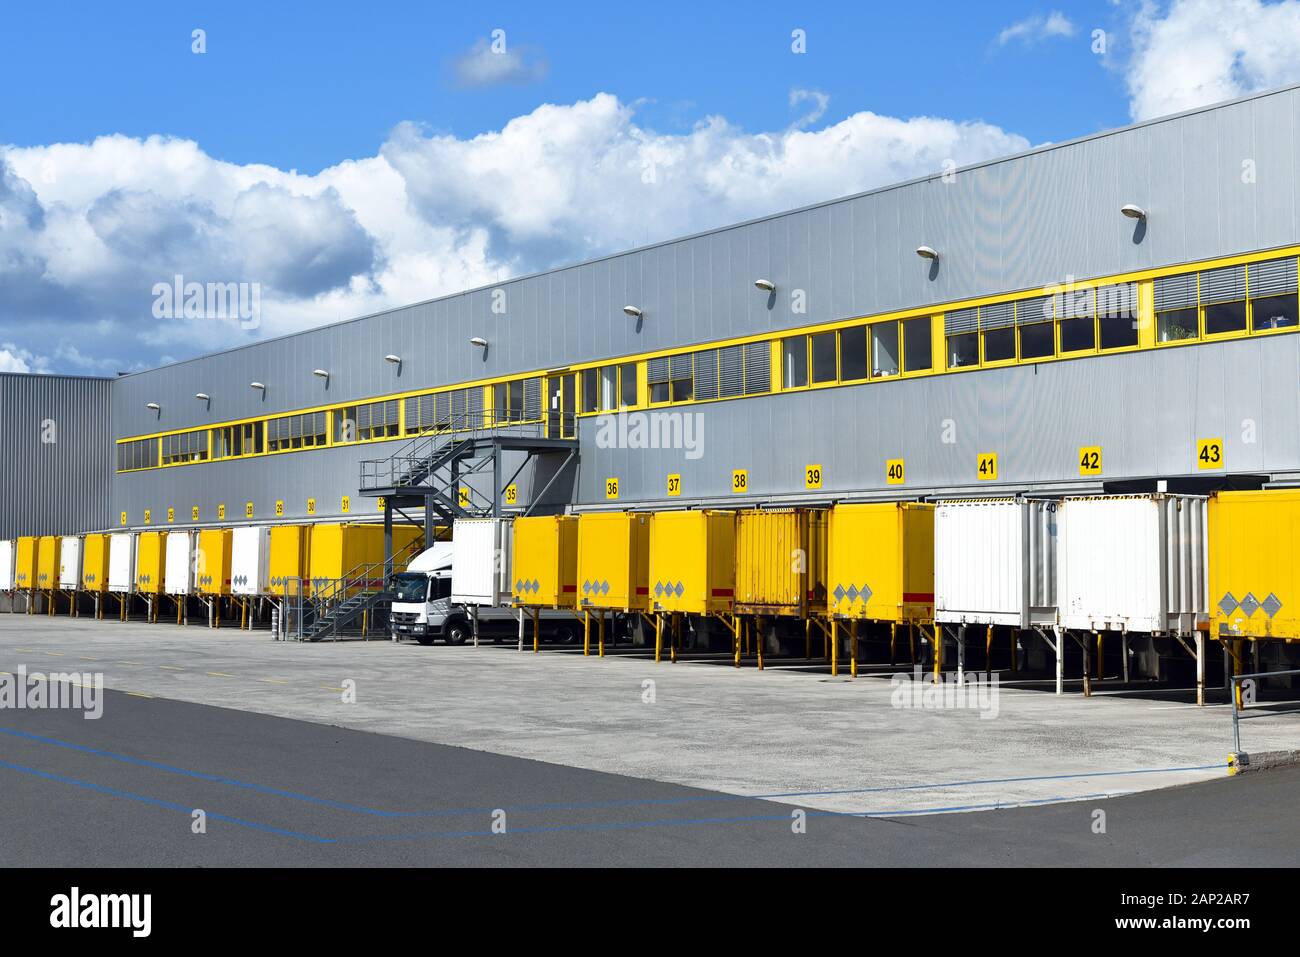 Die moderne industrielle Gebäude im Verkehr - Verladen von Waren auf Lkw einer Spedition für den Export Stockfoto